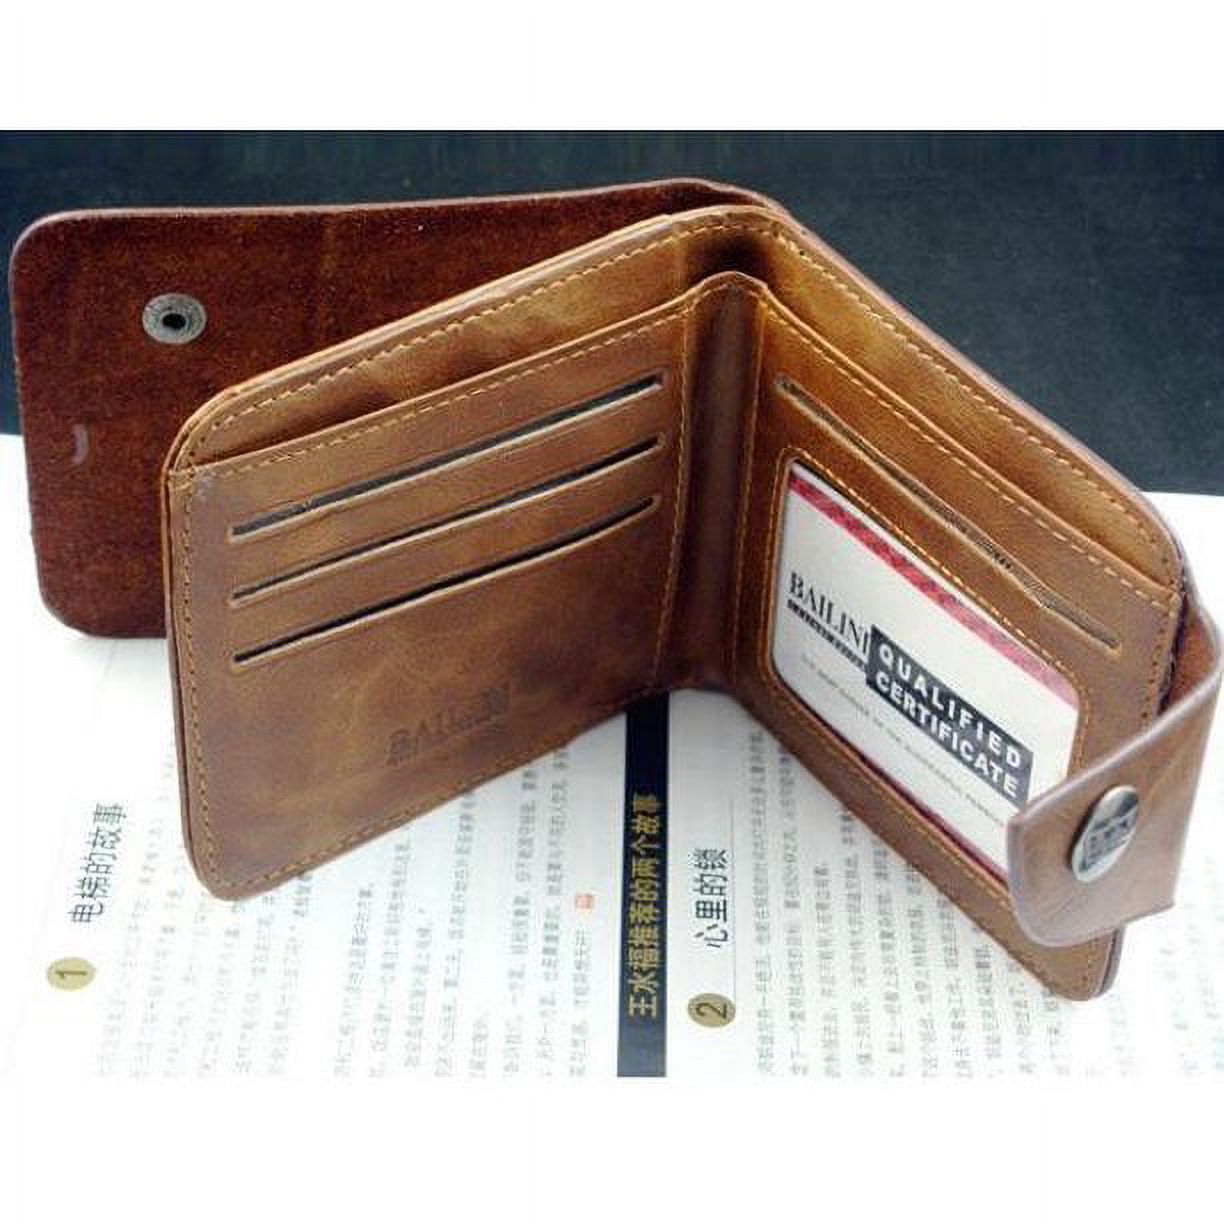 Wallets for Men Genuine Leather Pockets Credit/ID Cards Holder Purse Wallet Front Pocket Wallet - image 5 of 6